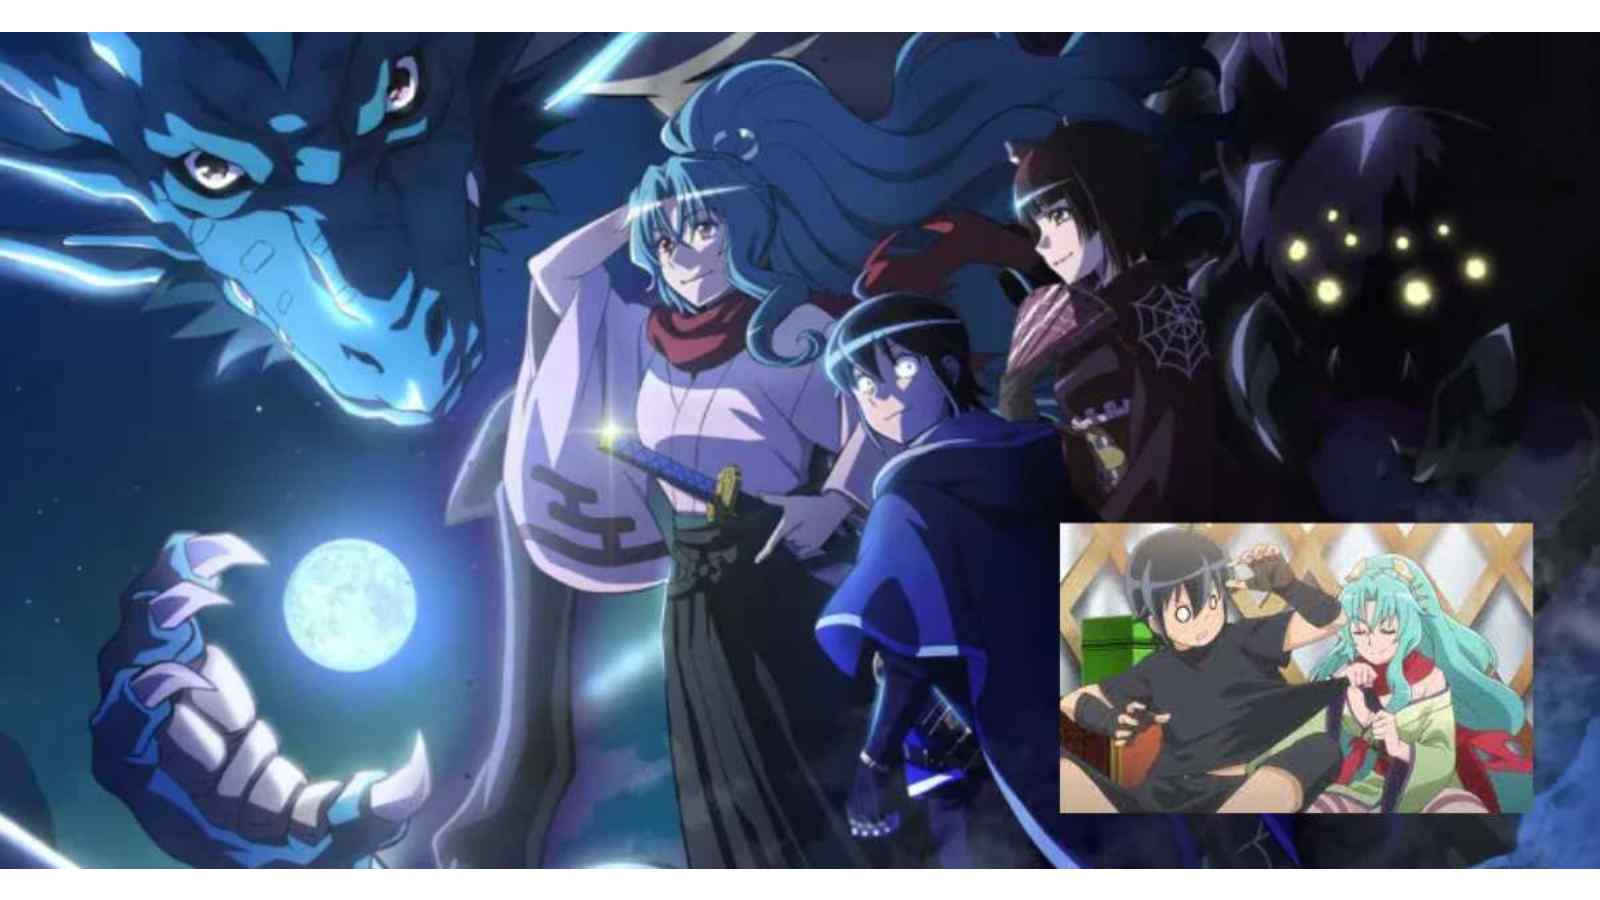 Share more than 145 moonlight anime season 2 - 3tdesign.edu.vn